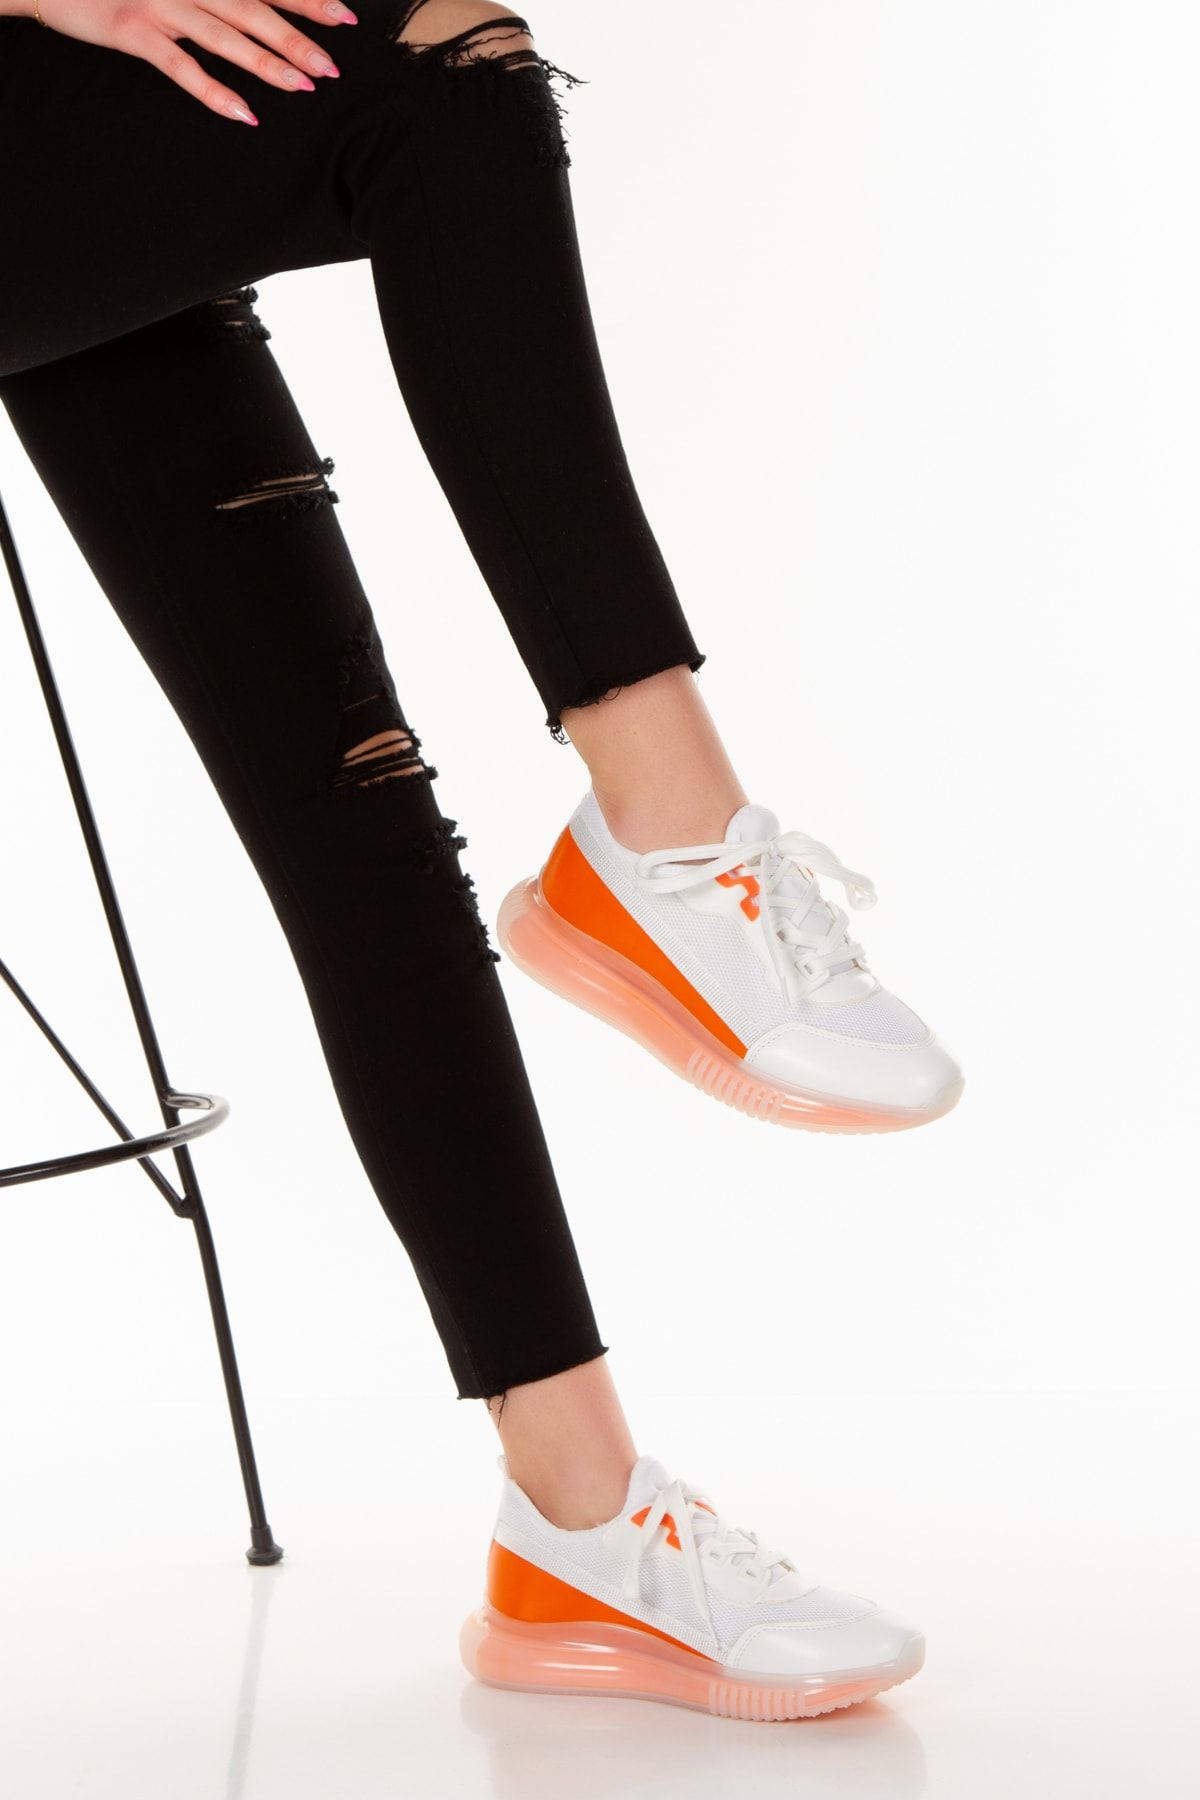 Limeo Turuncu Beyaz Fileli Comfort Tabanlı Rahat Bağcıklı Günlük Kadın Sneaker Spor Ayakkabı